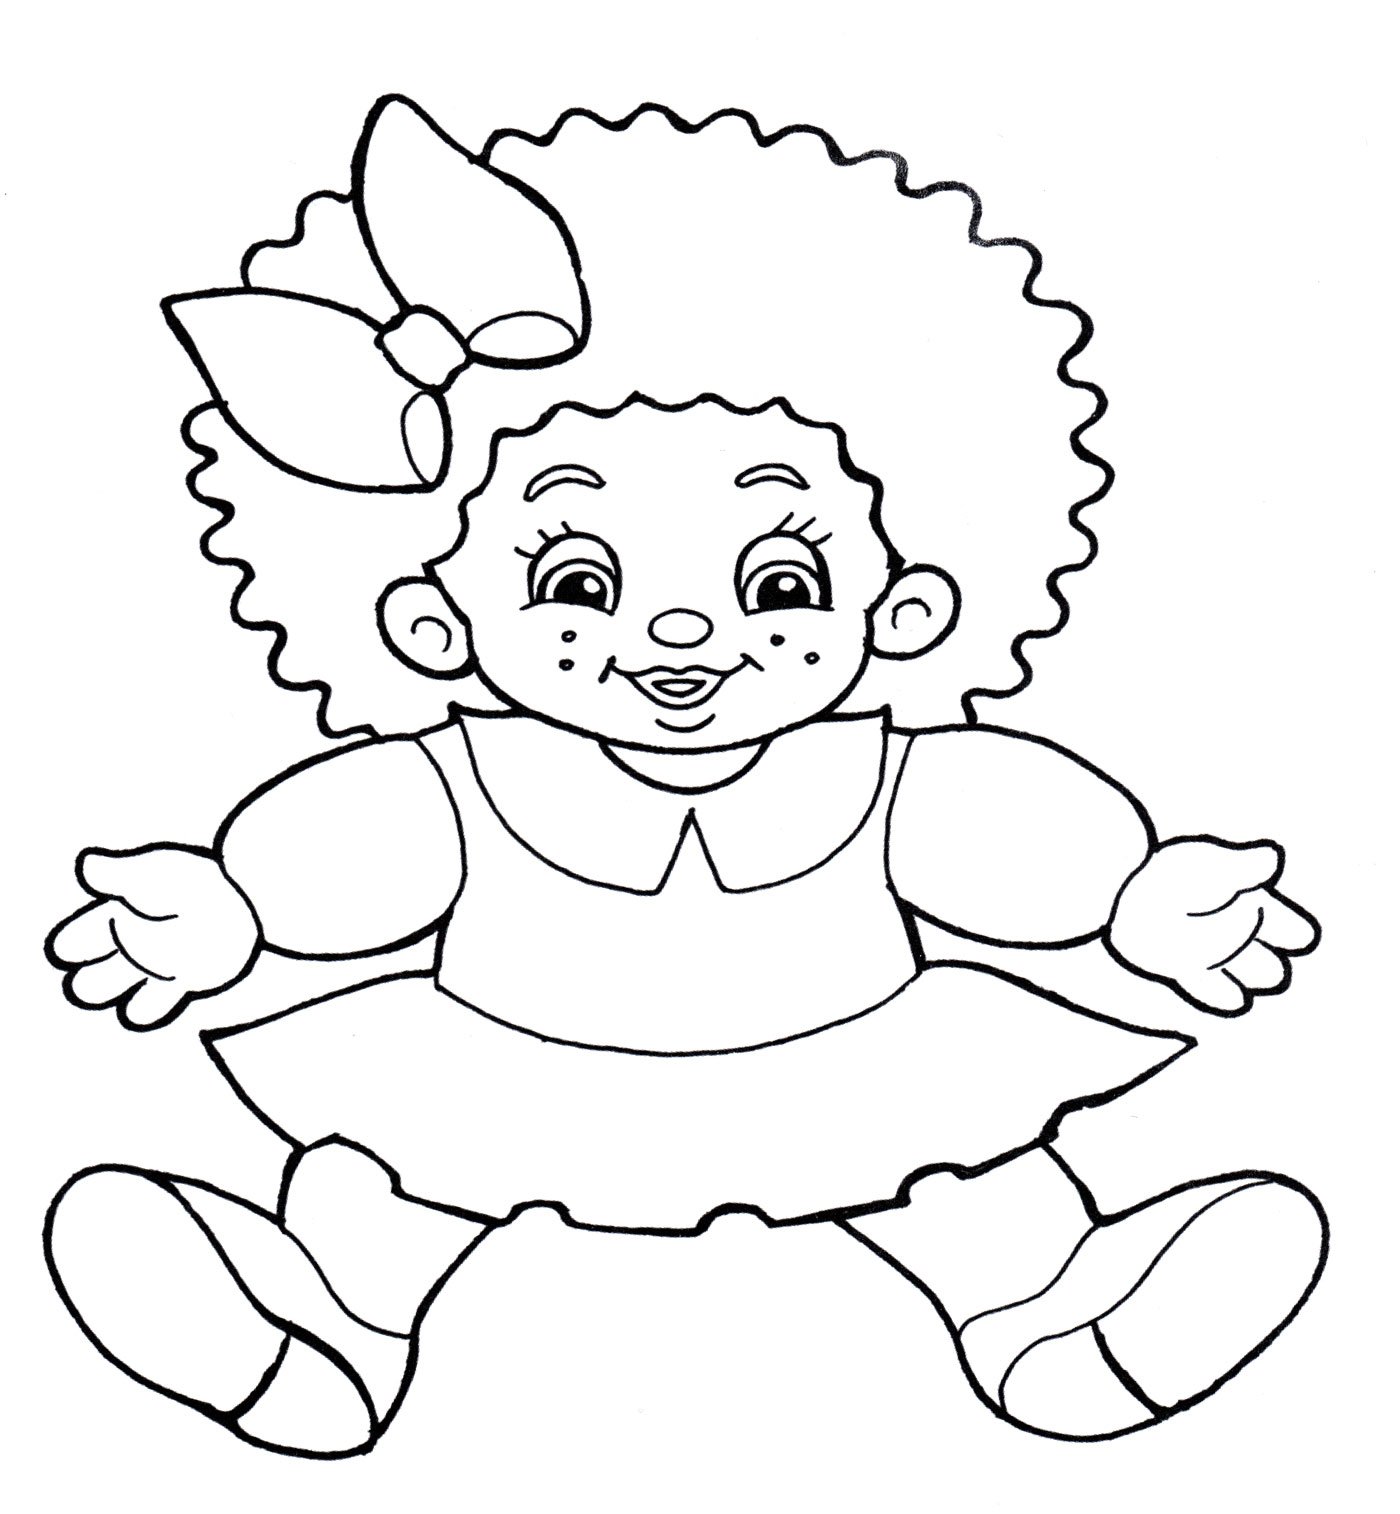 Раскраска кукла для детей 3-4 лет